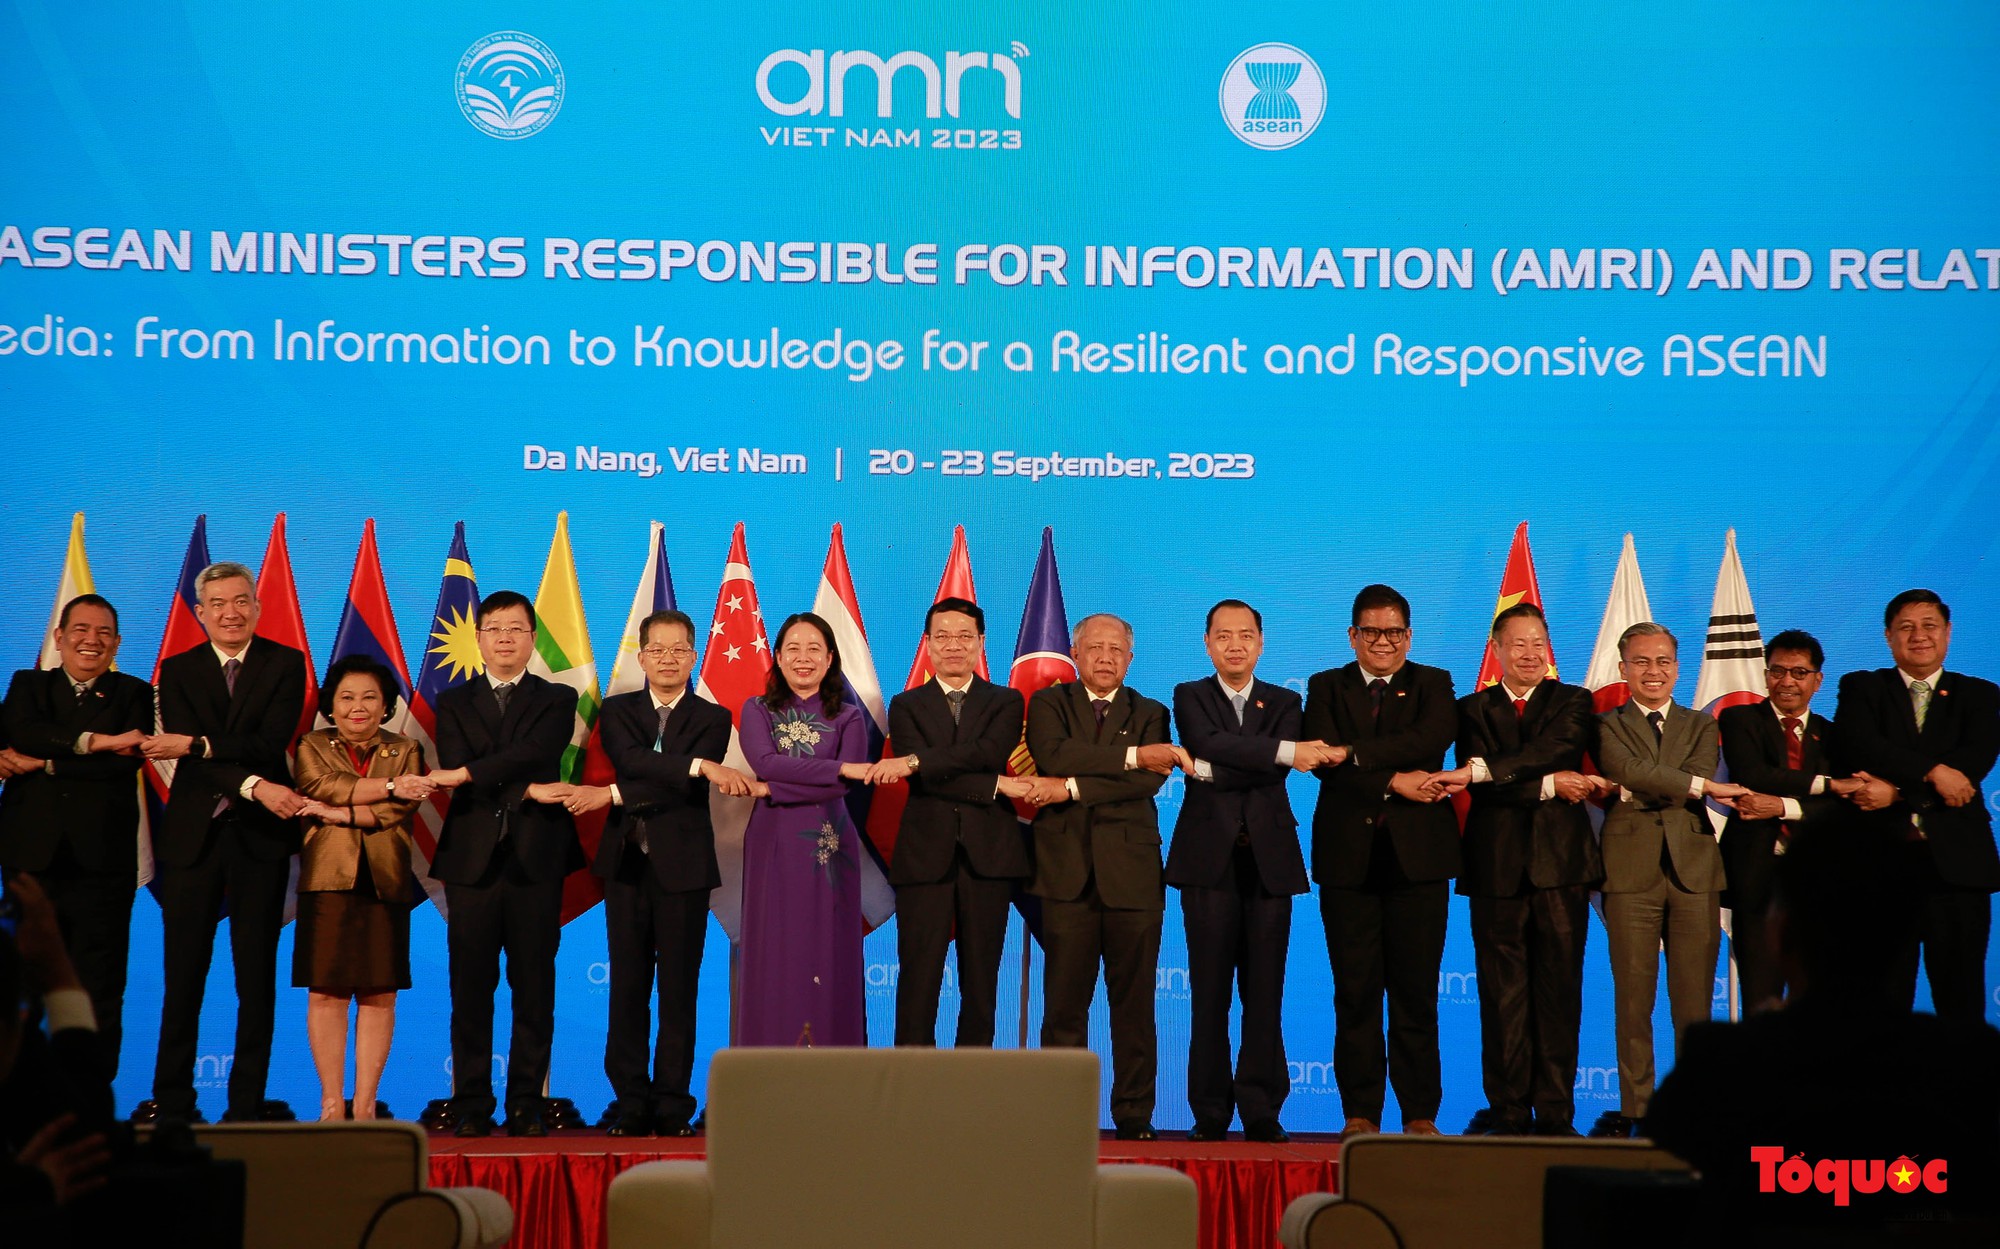 Khai mạc hội nghị Bộ trưởng Thông tin ASEAN lần thứ 16 - Ảnh 1.